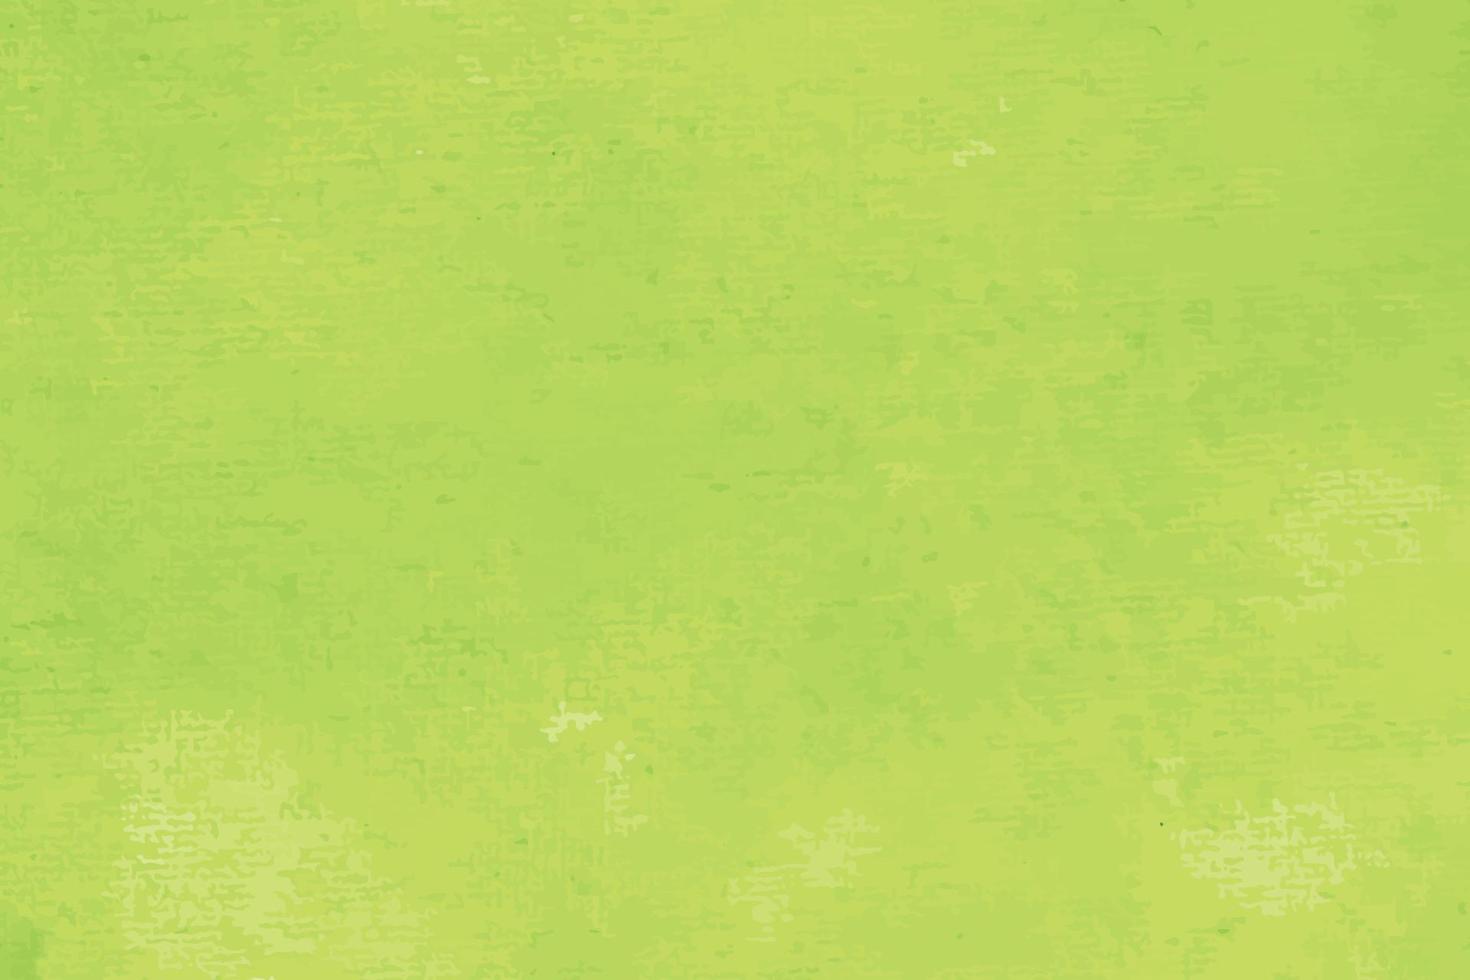 acquarello sfondo pastello macchie colorate acquarello dipinto a mano su carta vettore